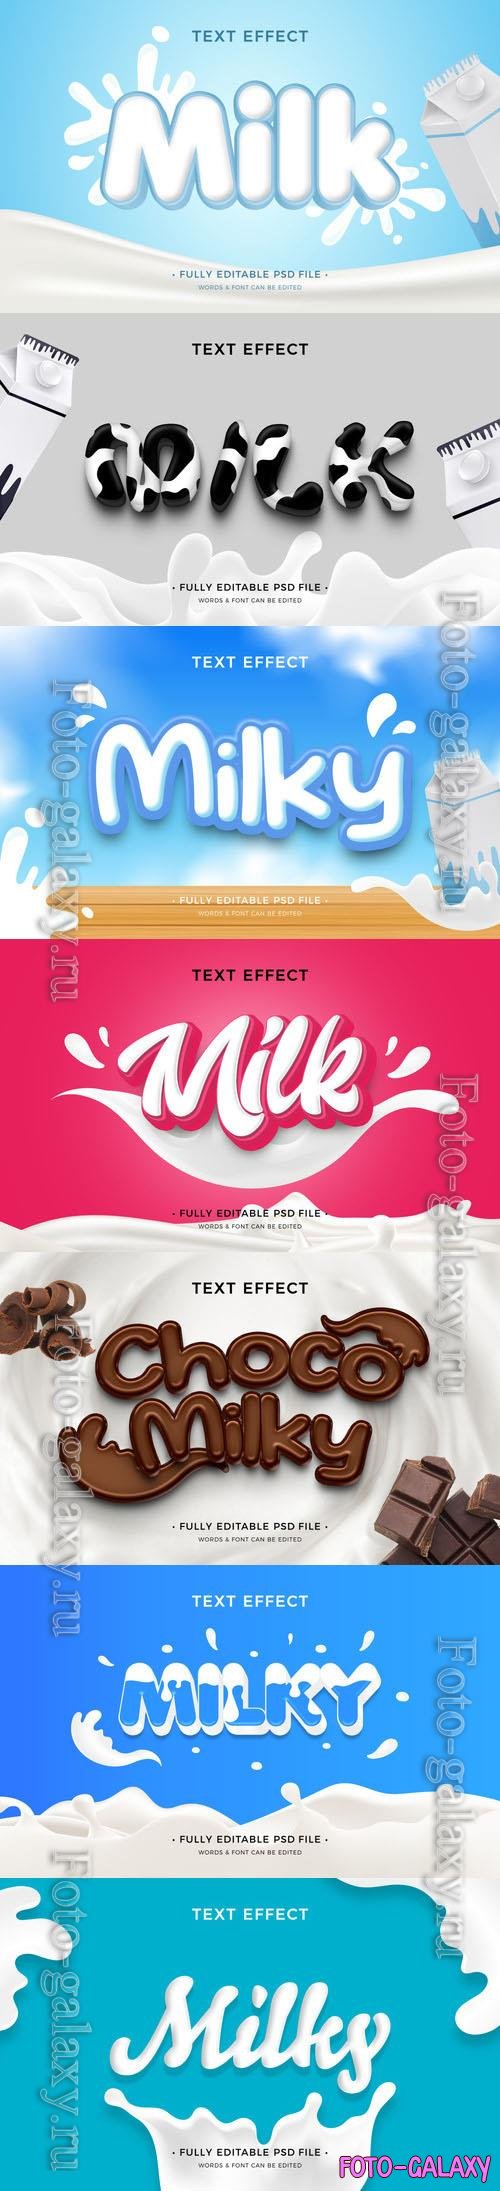 PSD milk text effect